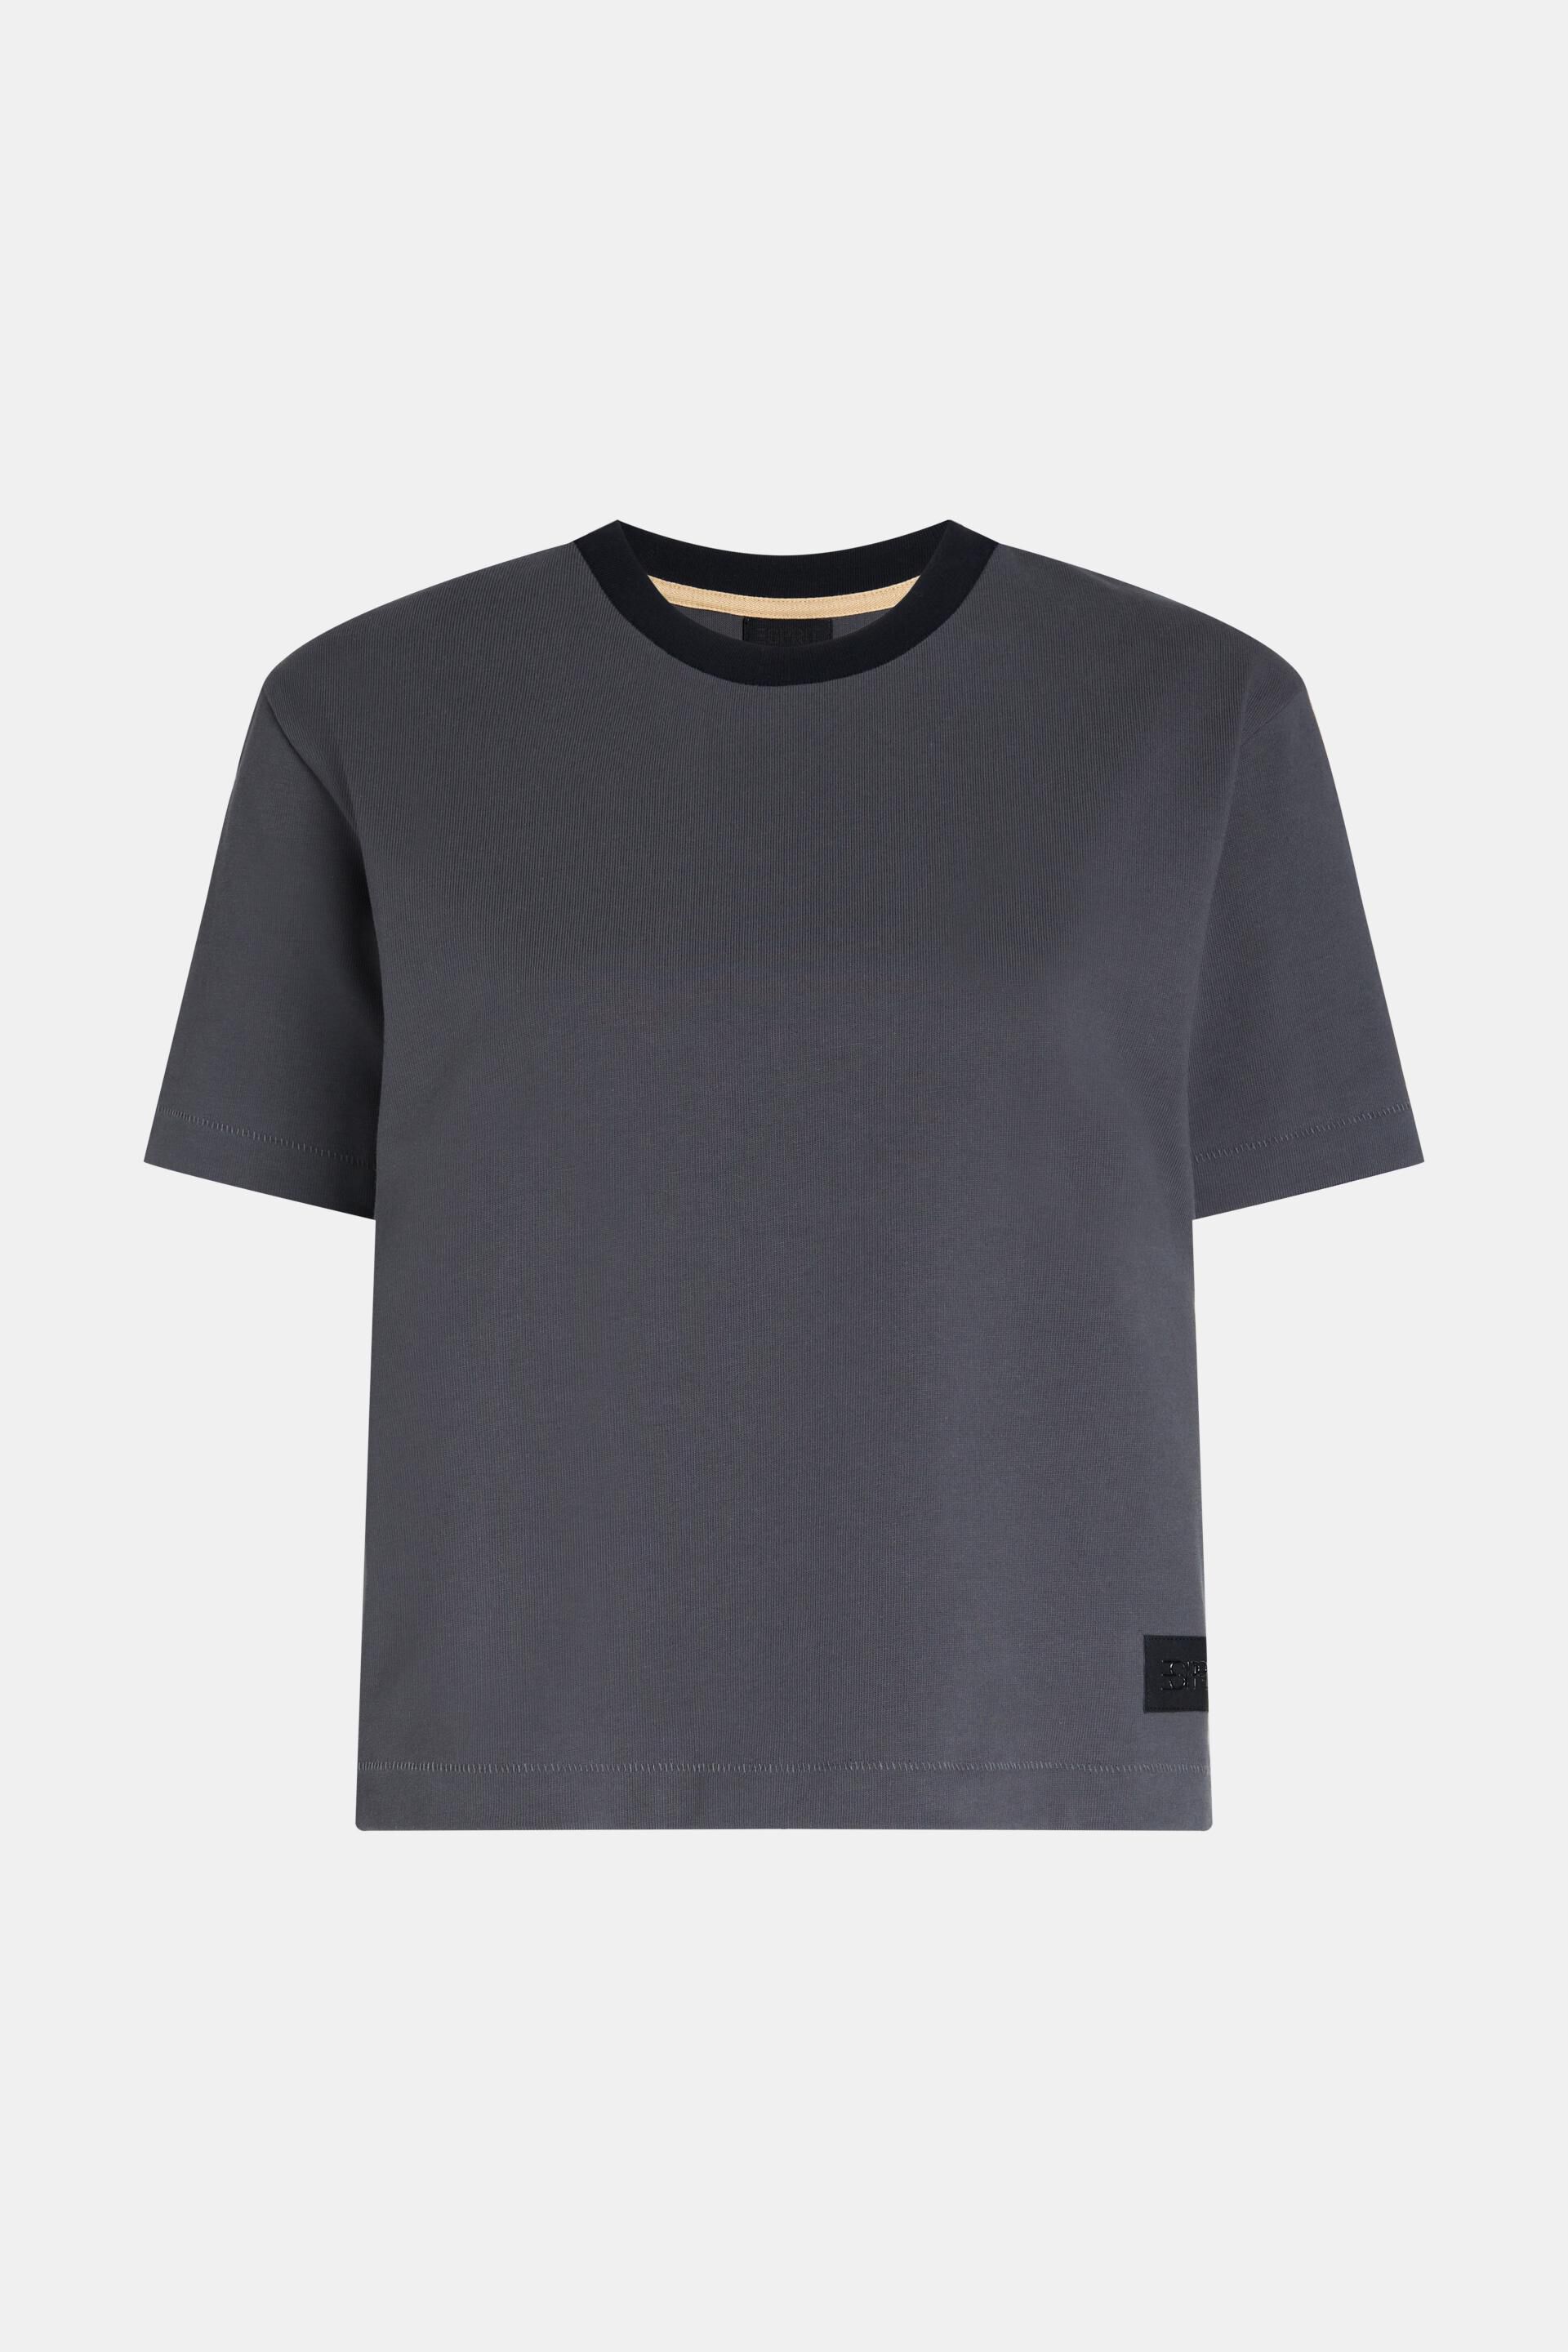 Esprit T-Shirt Passform mit aus kastiger schwerem Jersey